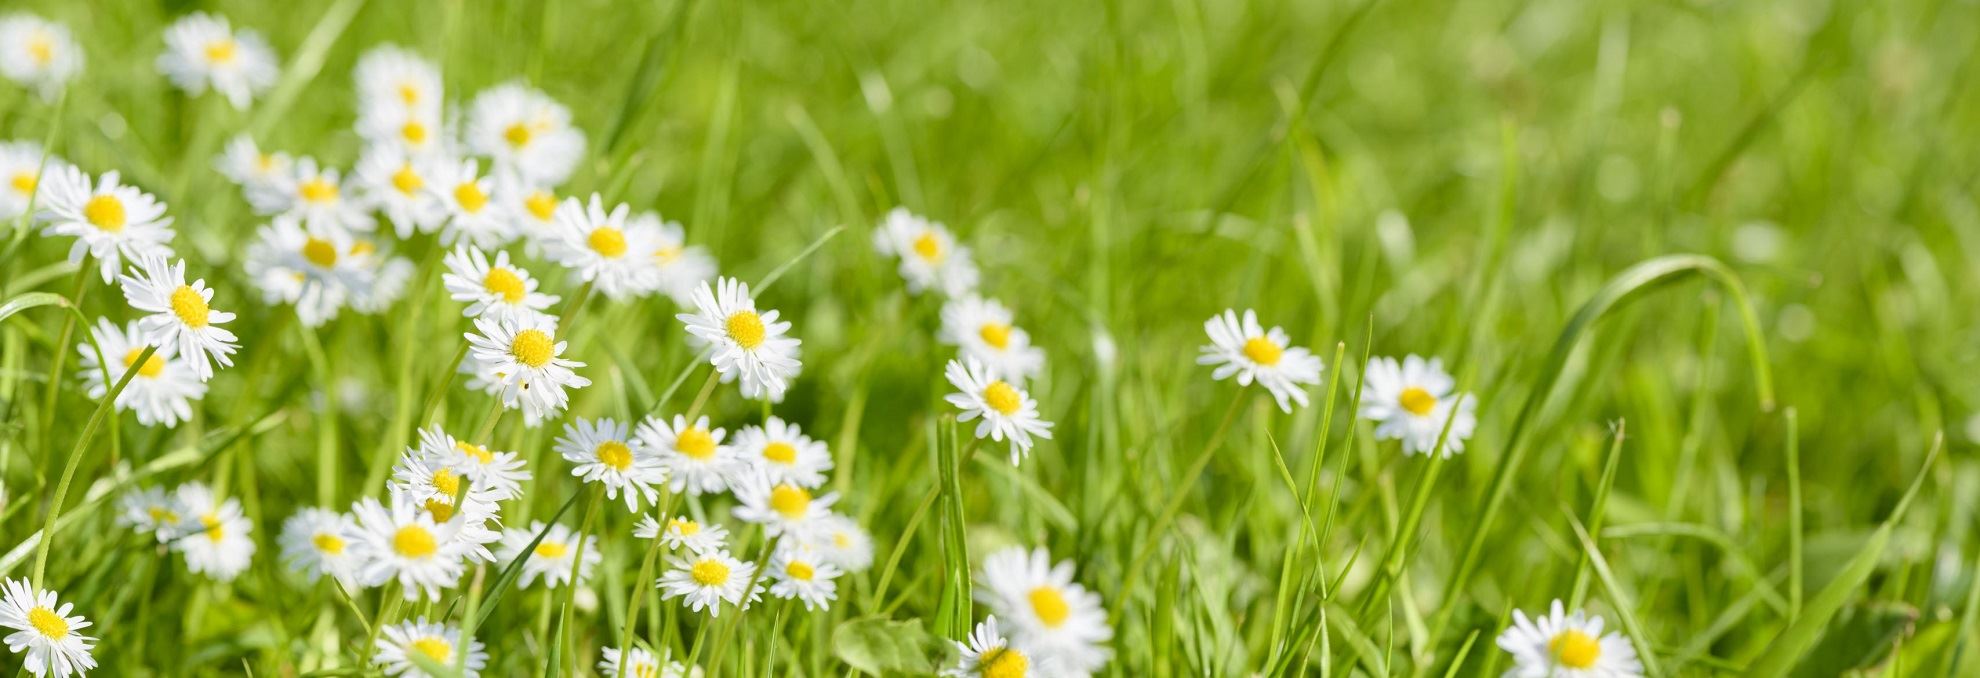 Daisy flowers in a green field